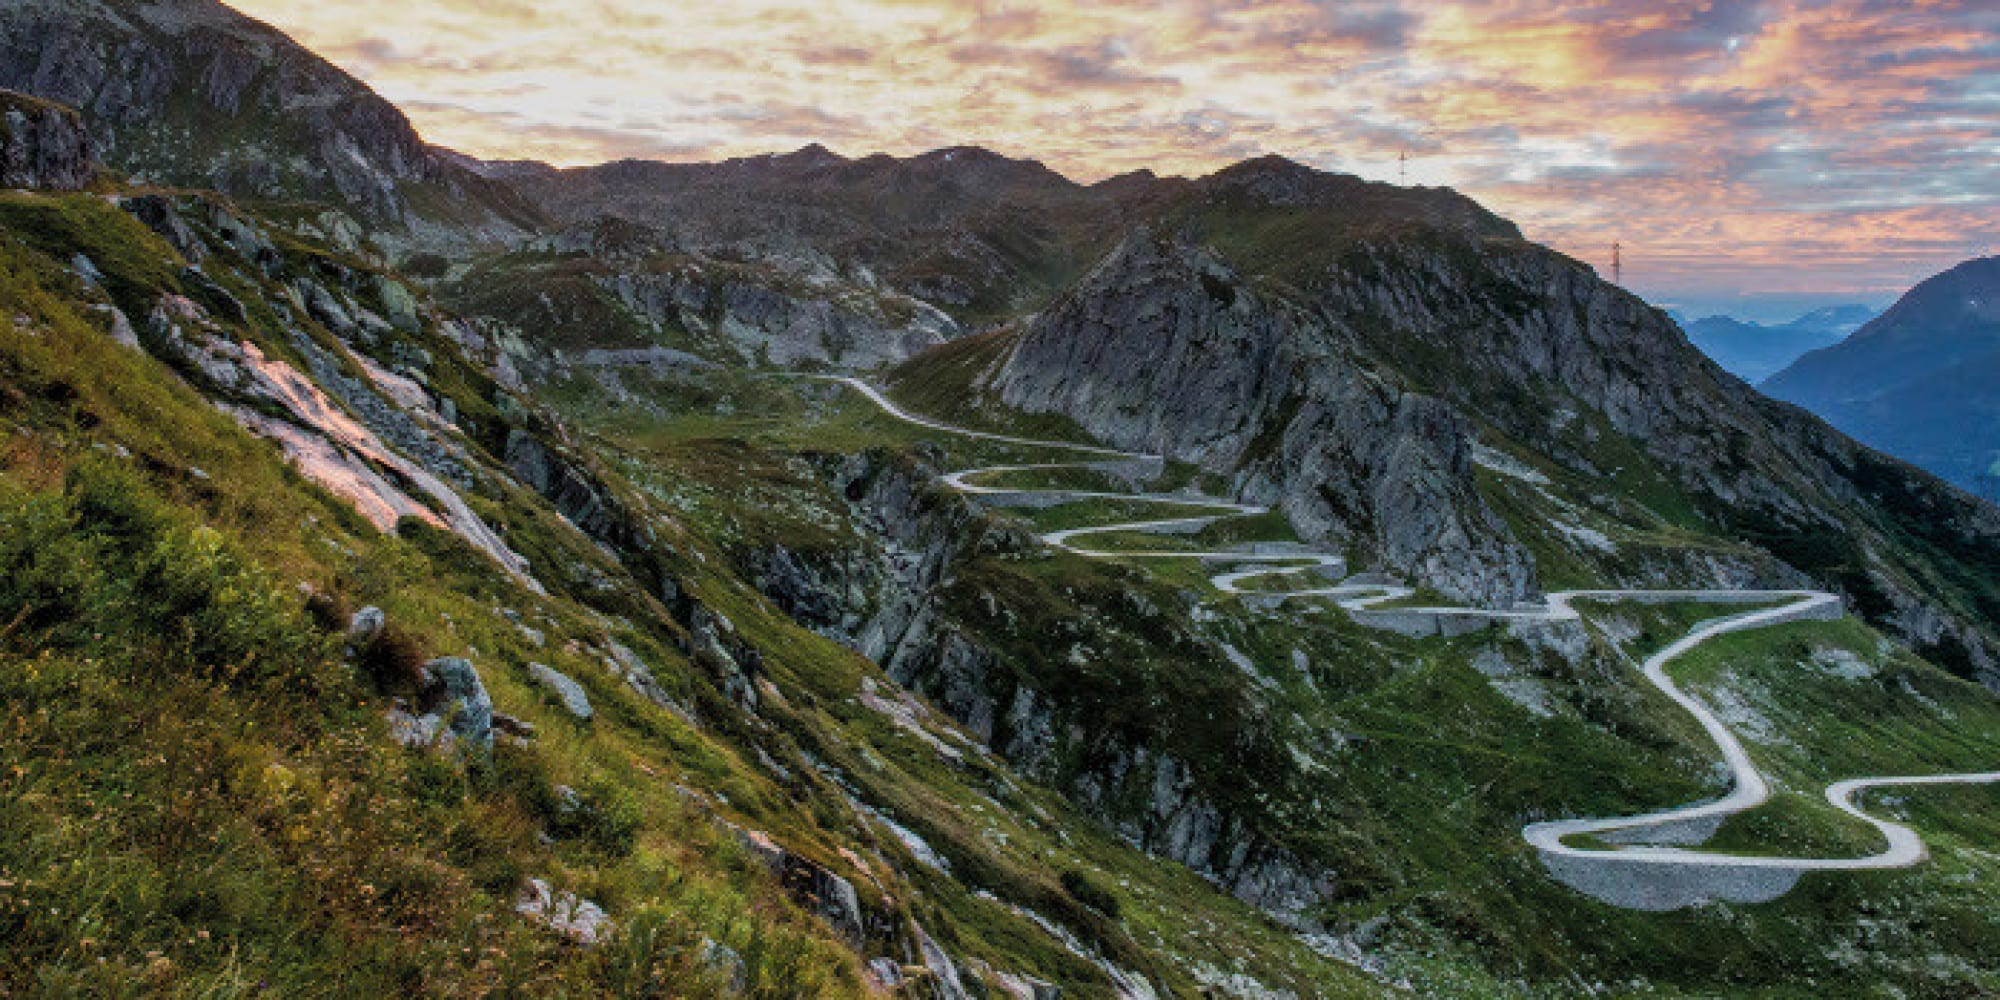 10 percorsi della Route 66 europea creata in Svizzera e che comprende 11 siti Unesco (FOTO)